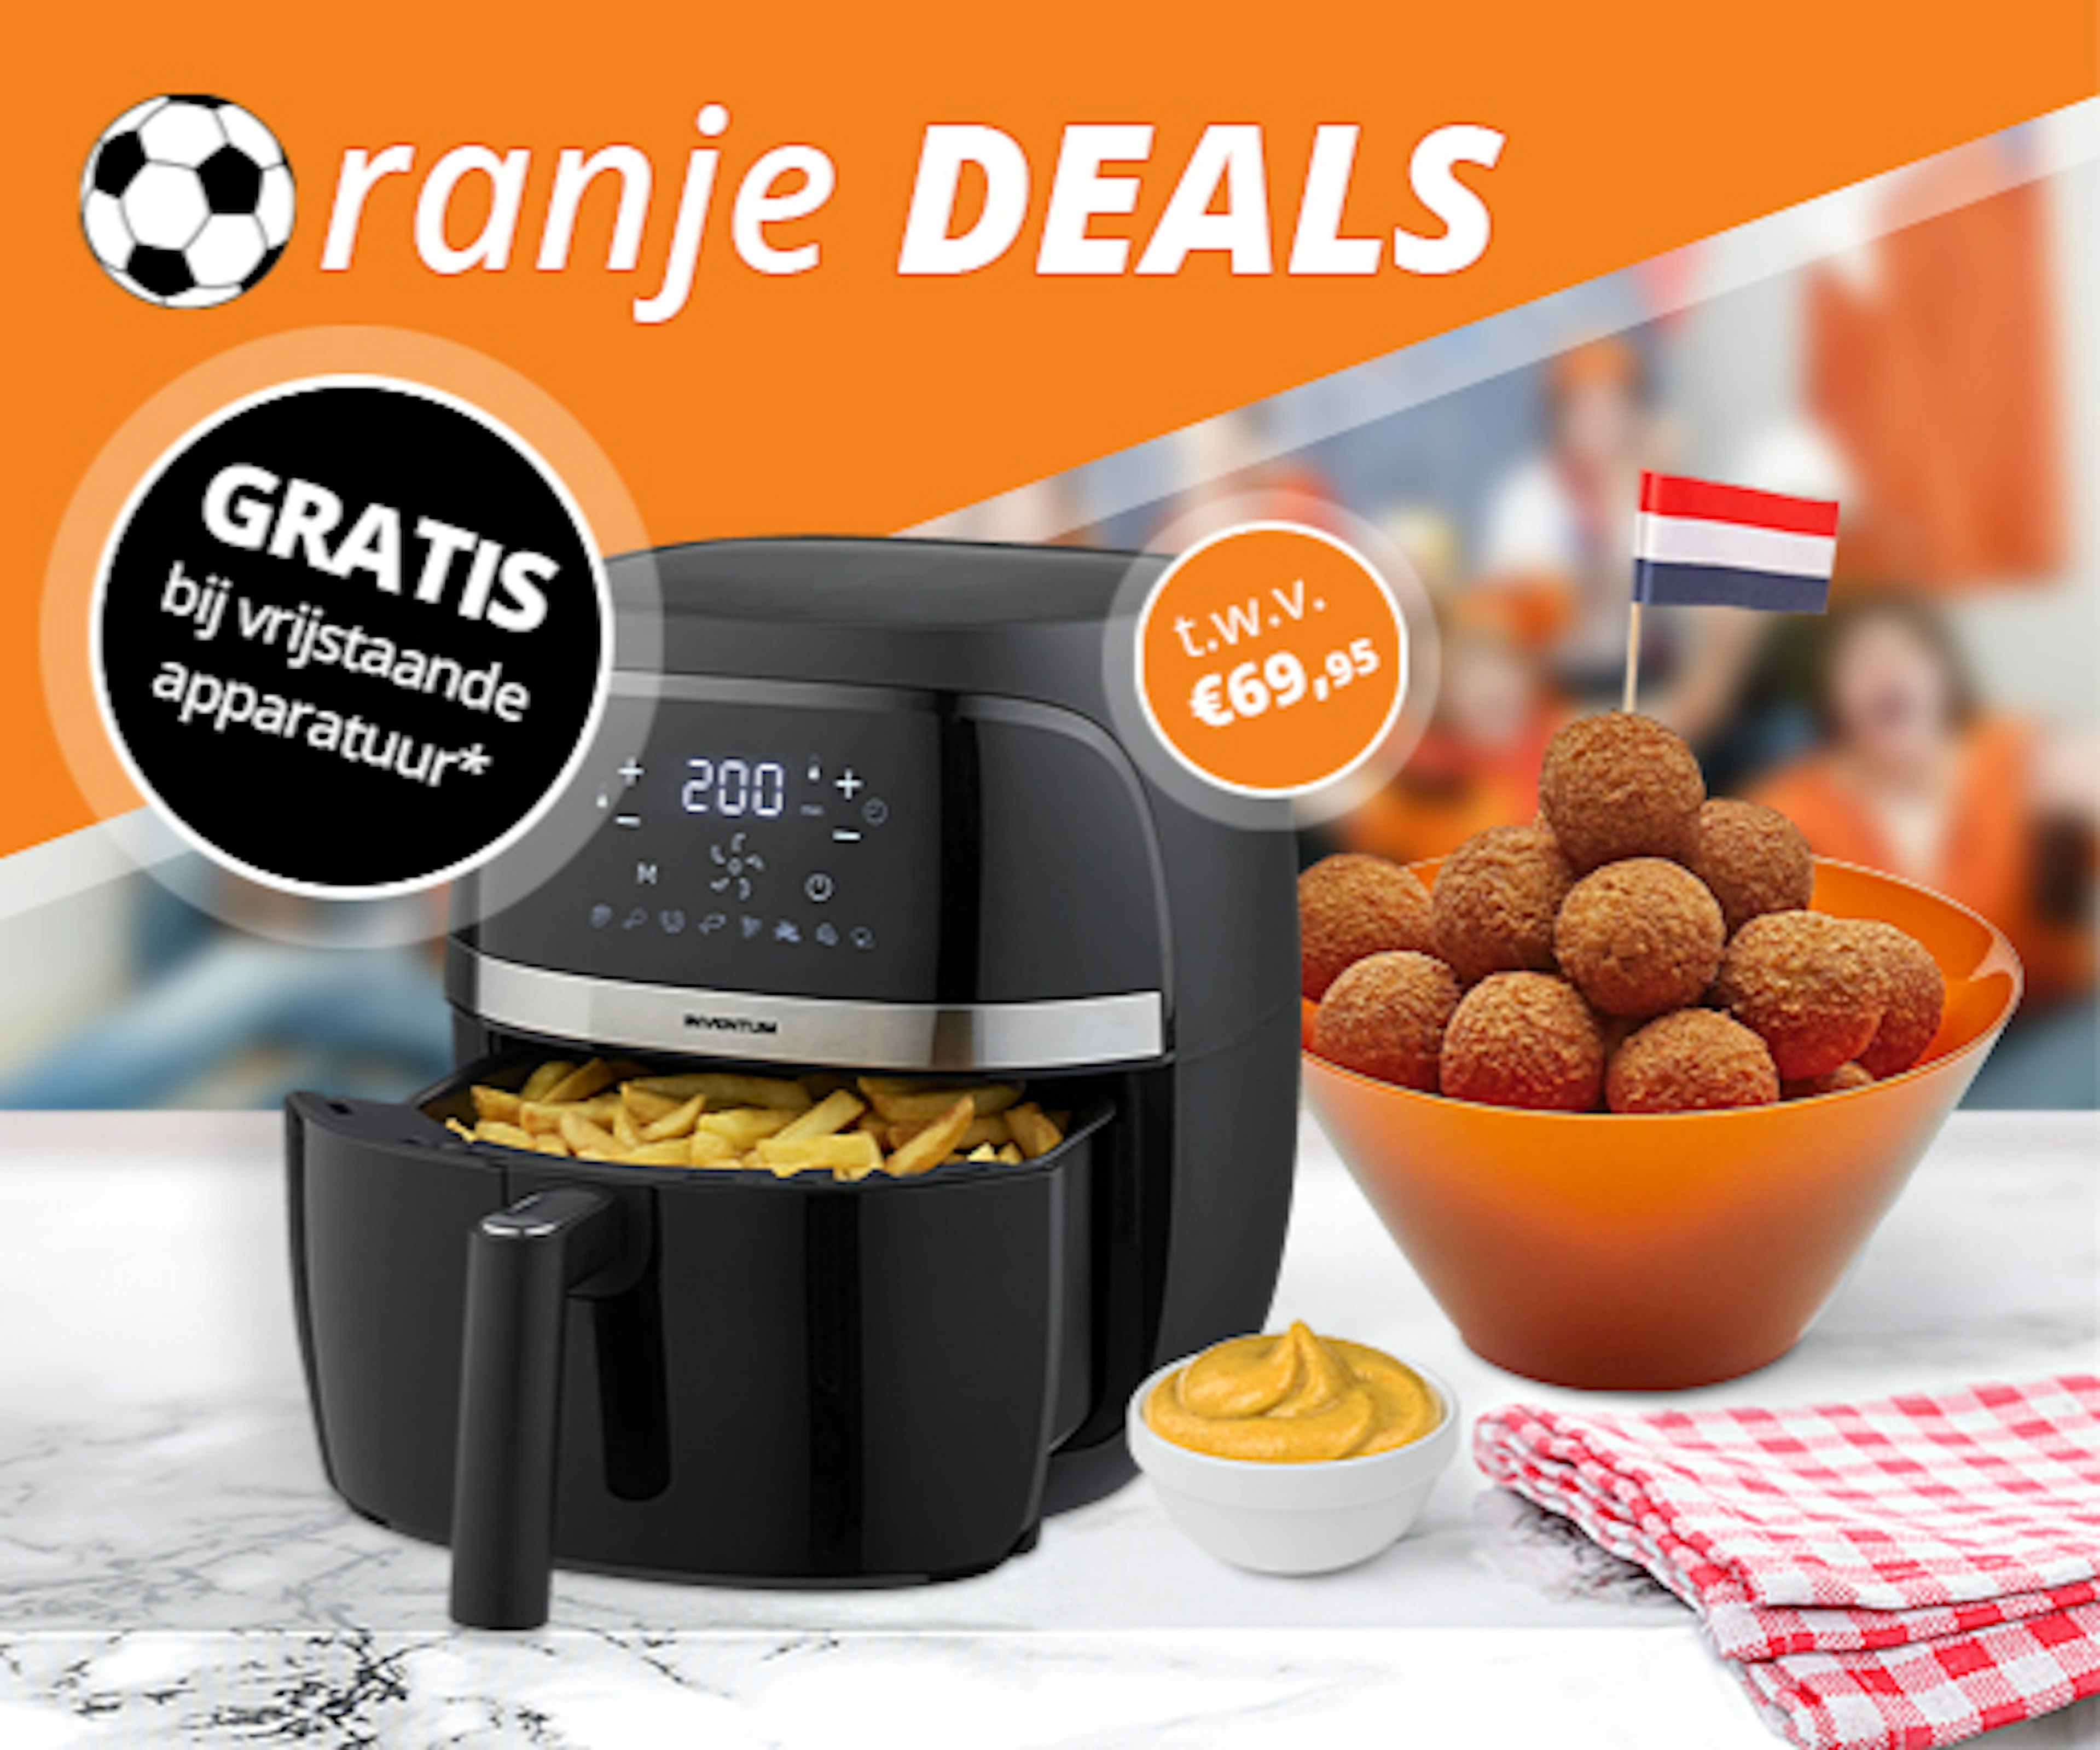 Oranje Deals: GRATIS Airfryer bij elke bestelling van vrijstaande apparatuur vanaf € 500,-